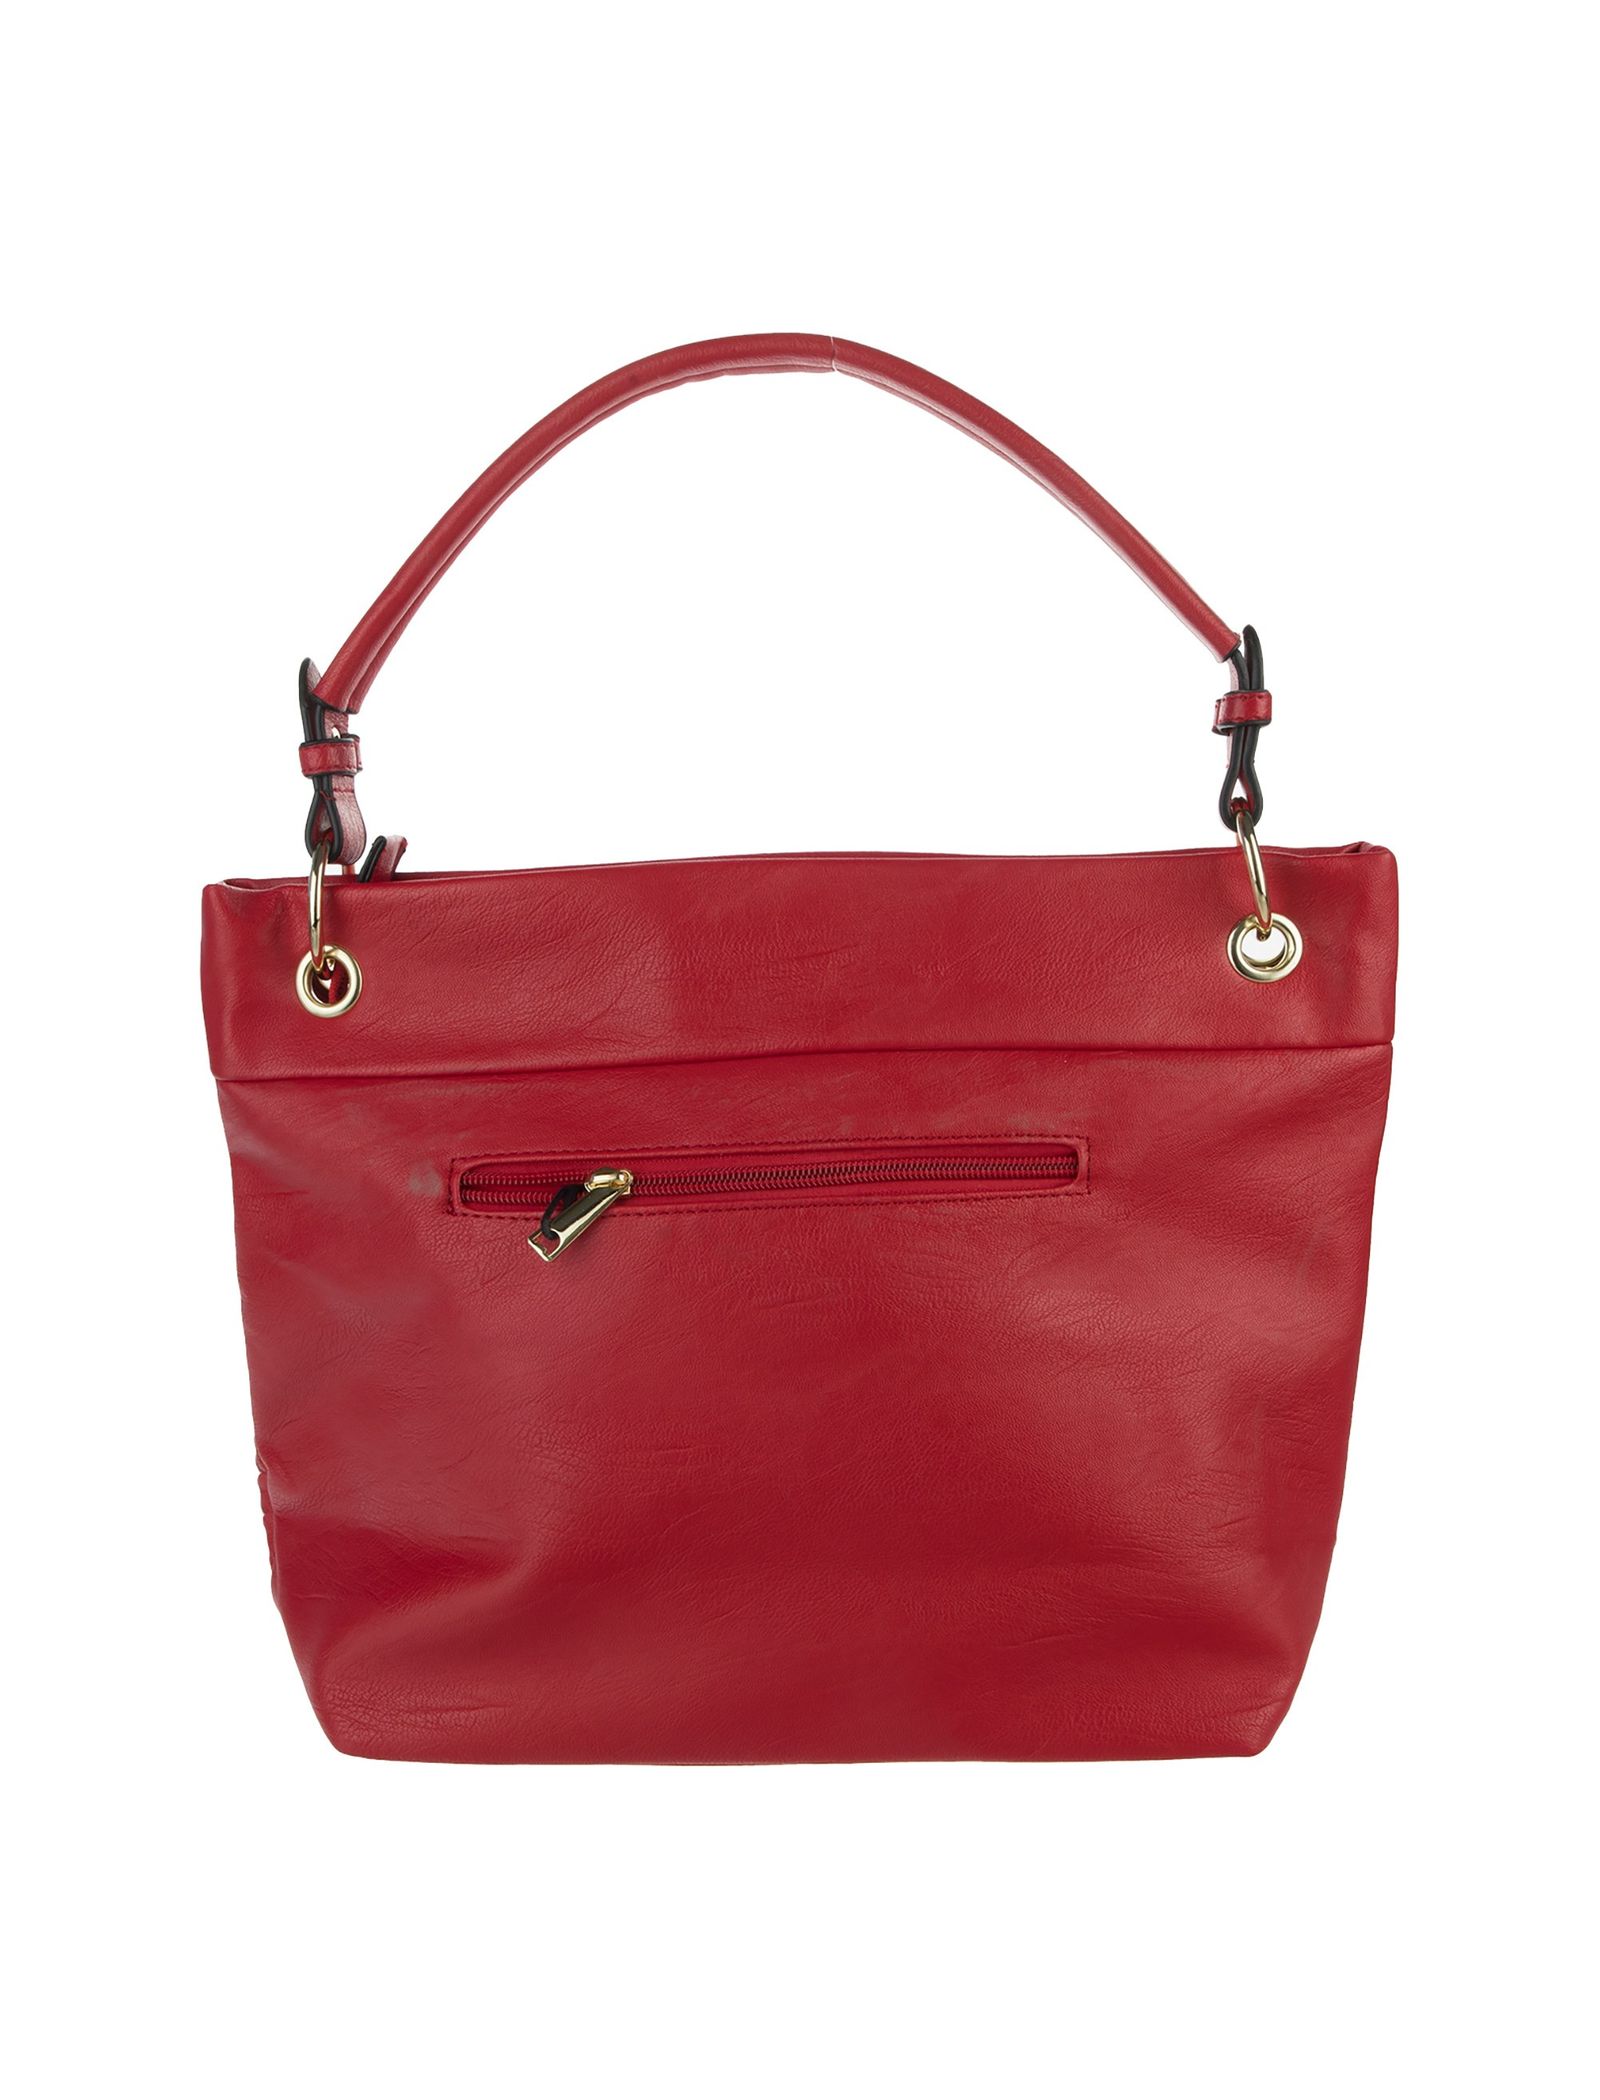 کیف دوشی روزمره زنانه - دادلین تک سایز - قرمز - 3